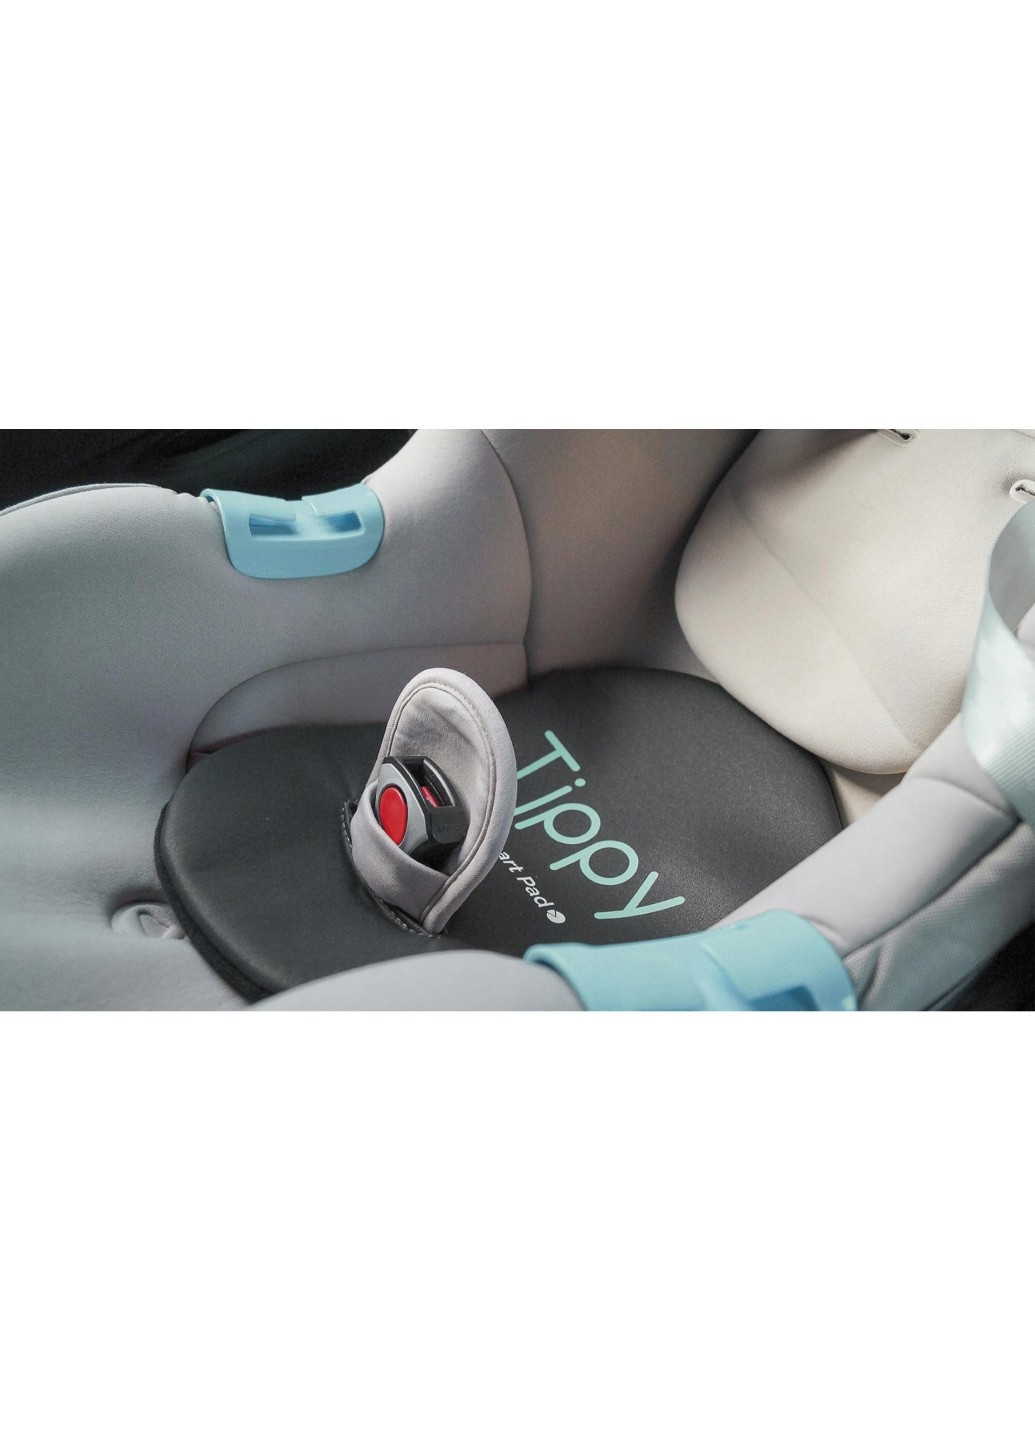 Смарт-подушка для дитячого автокрісла, щоб уникнути забування дитини в автомобілі TIPPY SMART PAD TIPPY PAD (267501469)